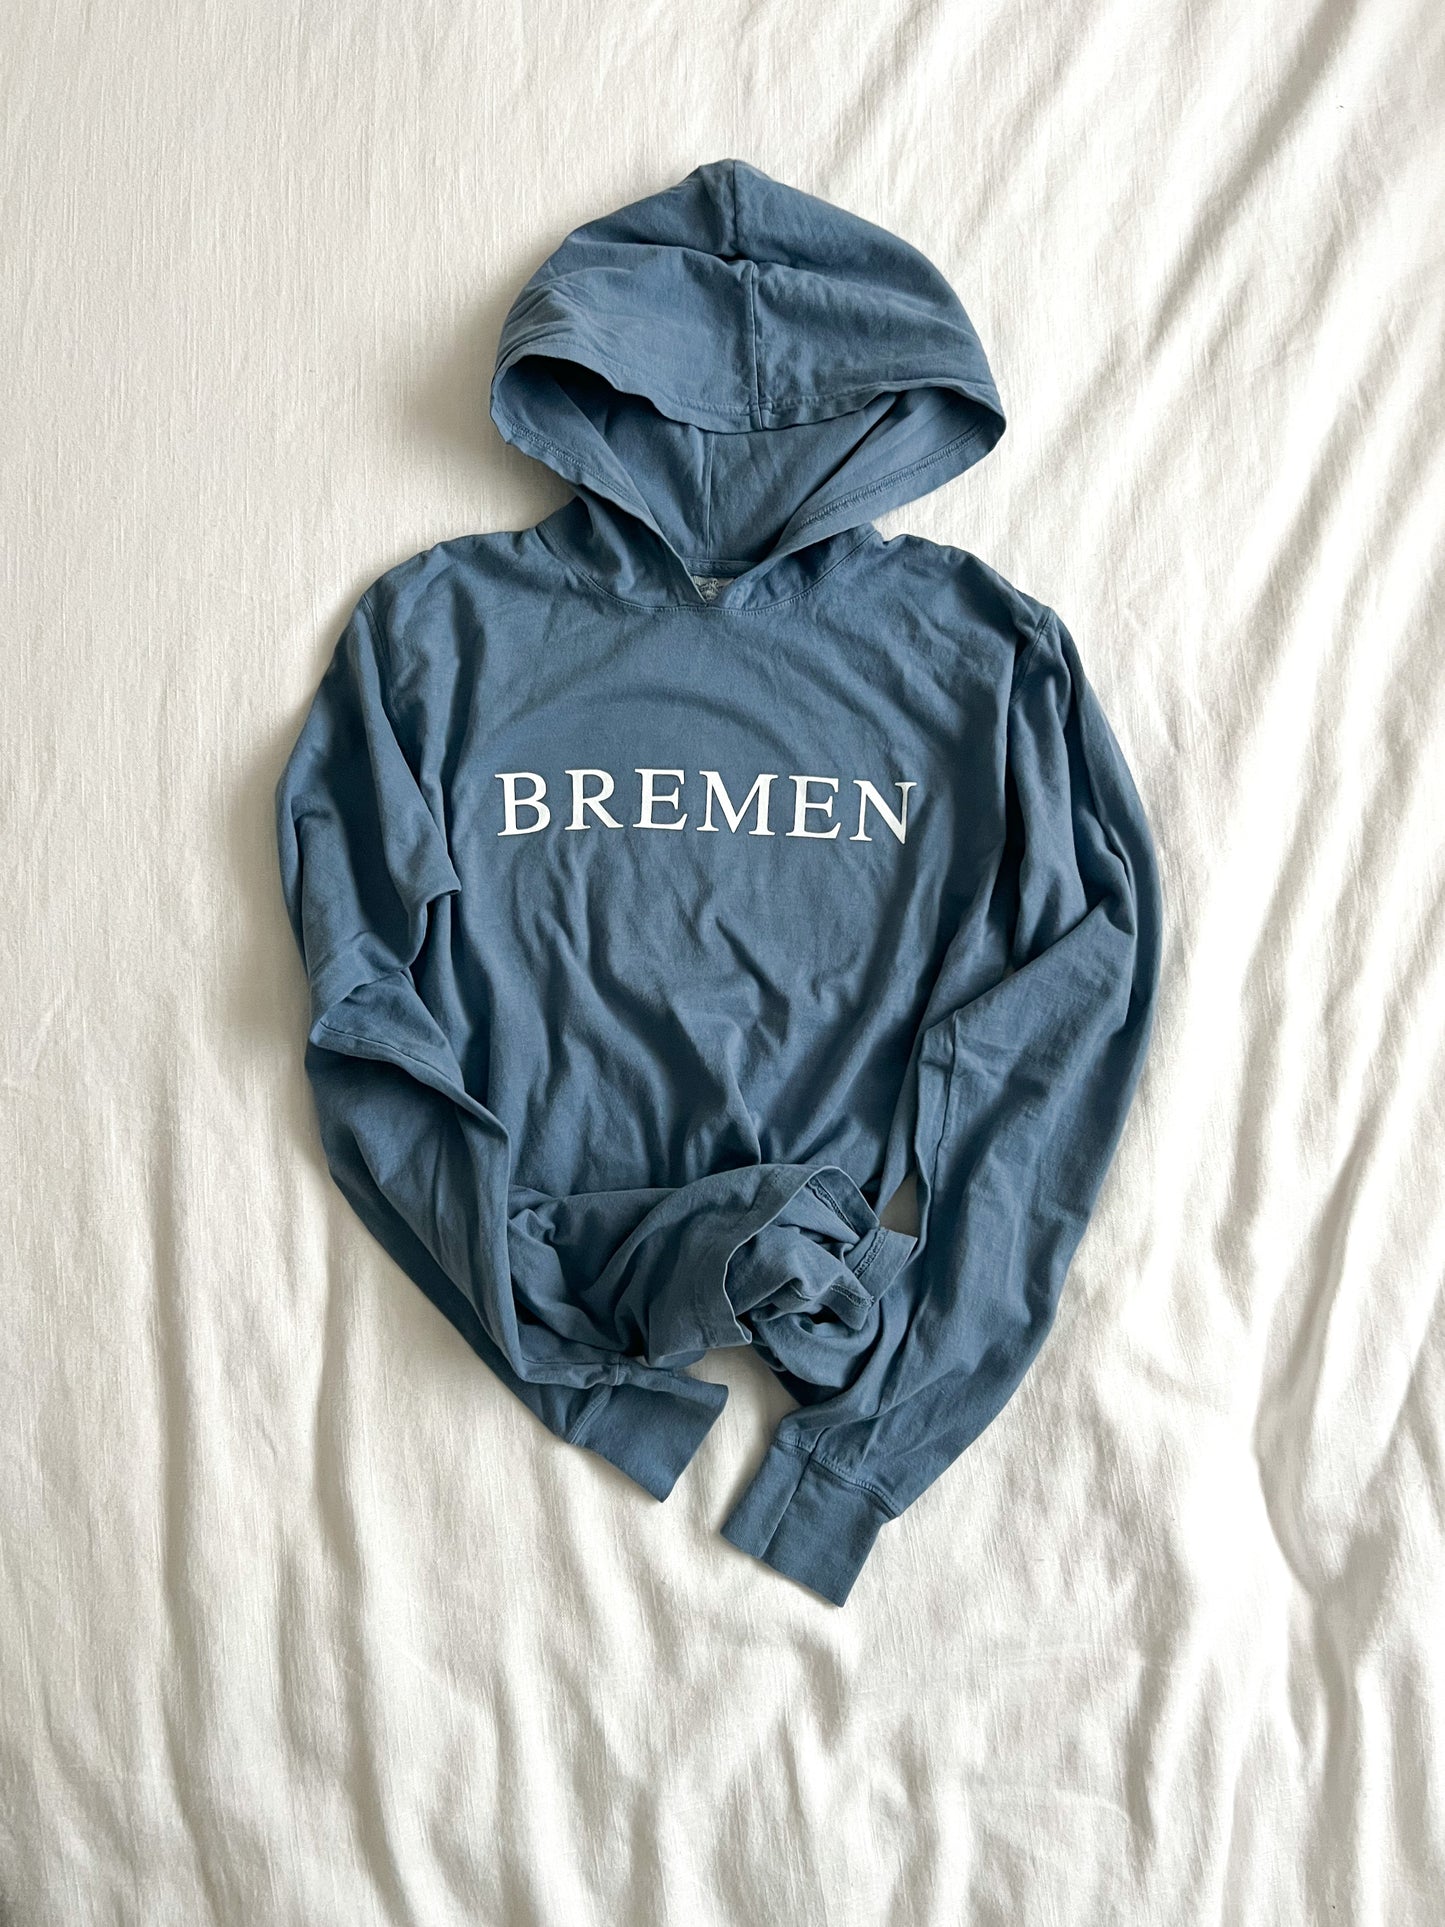 Bremen tee hoodie